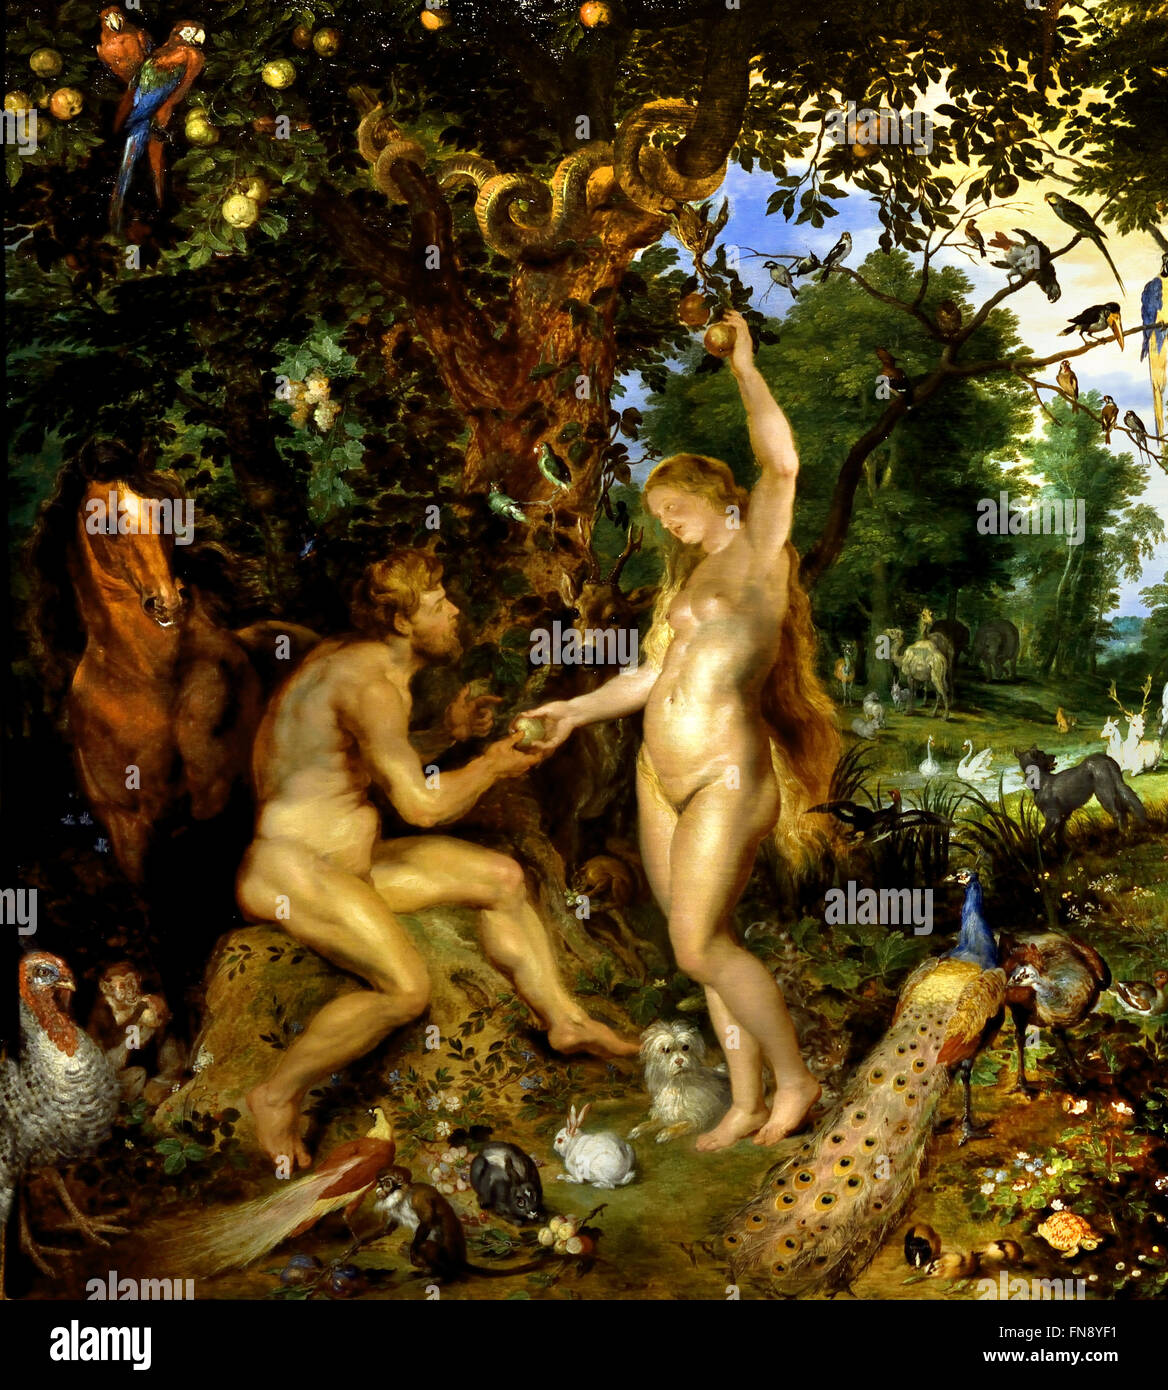 Le Jardin d'Eden avec la chute de l'homme 1615 Jan Brueghel l'ancien 1568-1625 et Peter Paul Rubens 1577-1640 Belgique flamande Banque D'Images